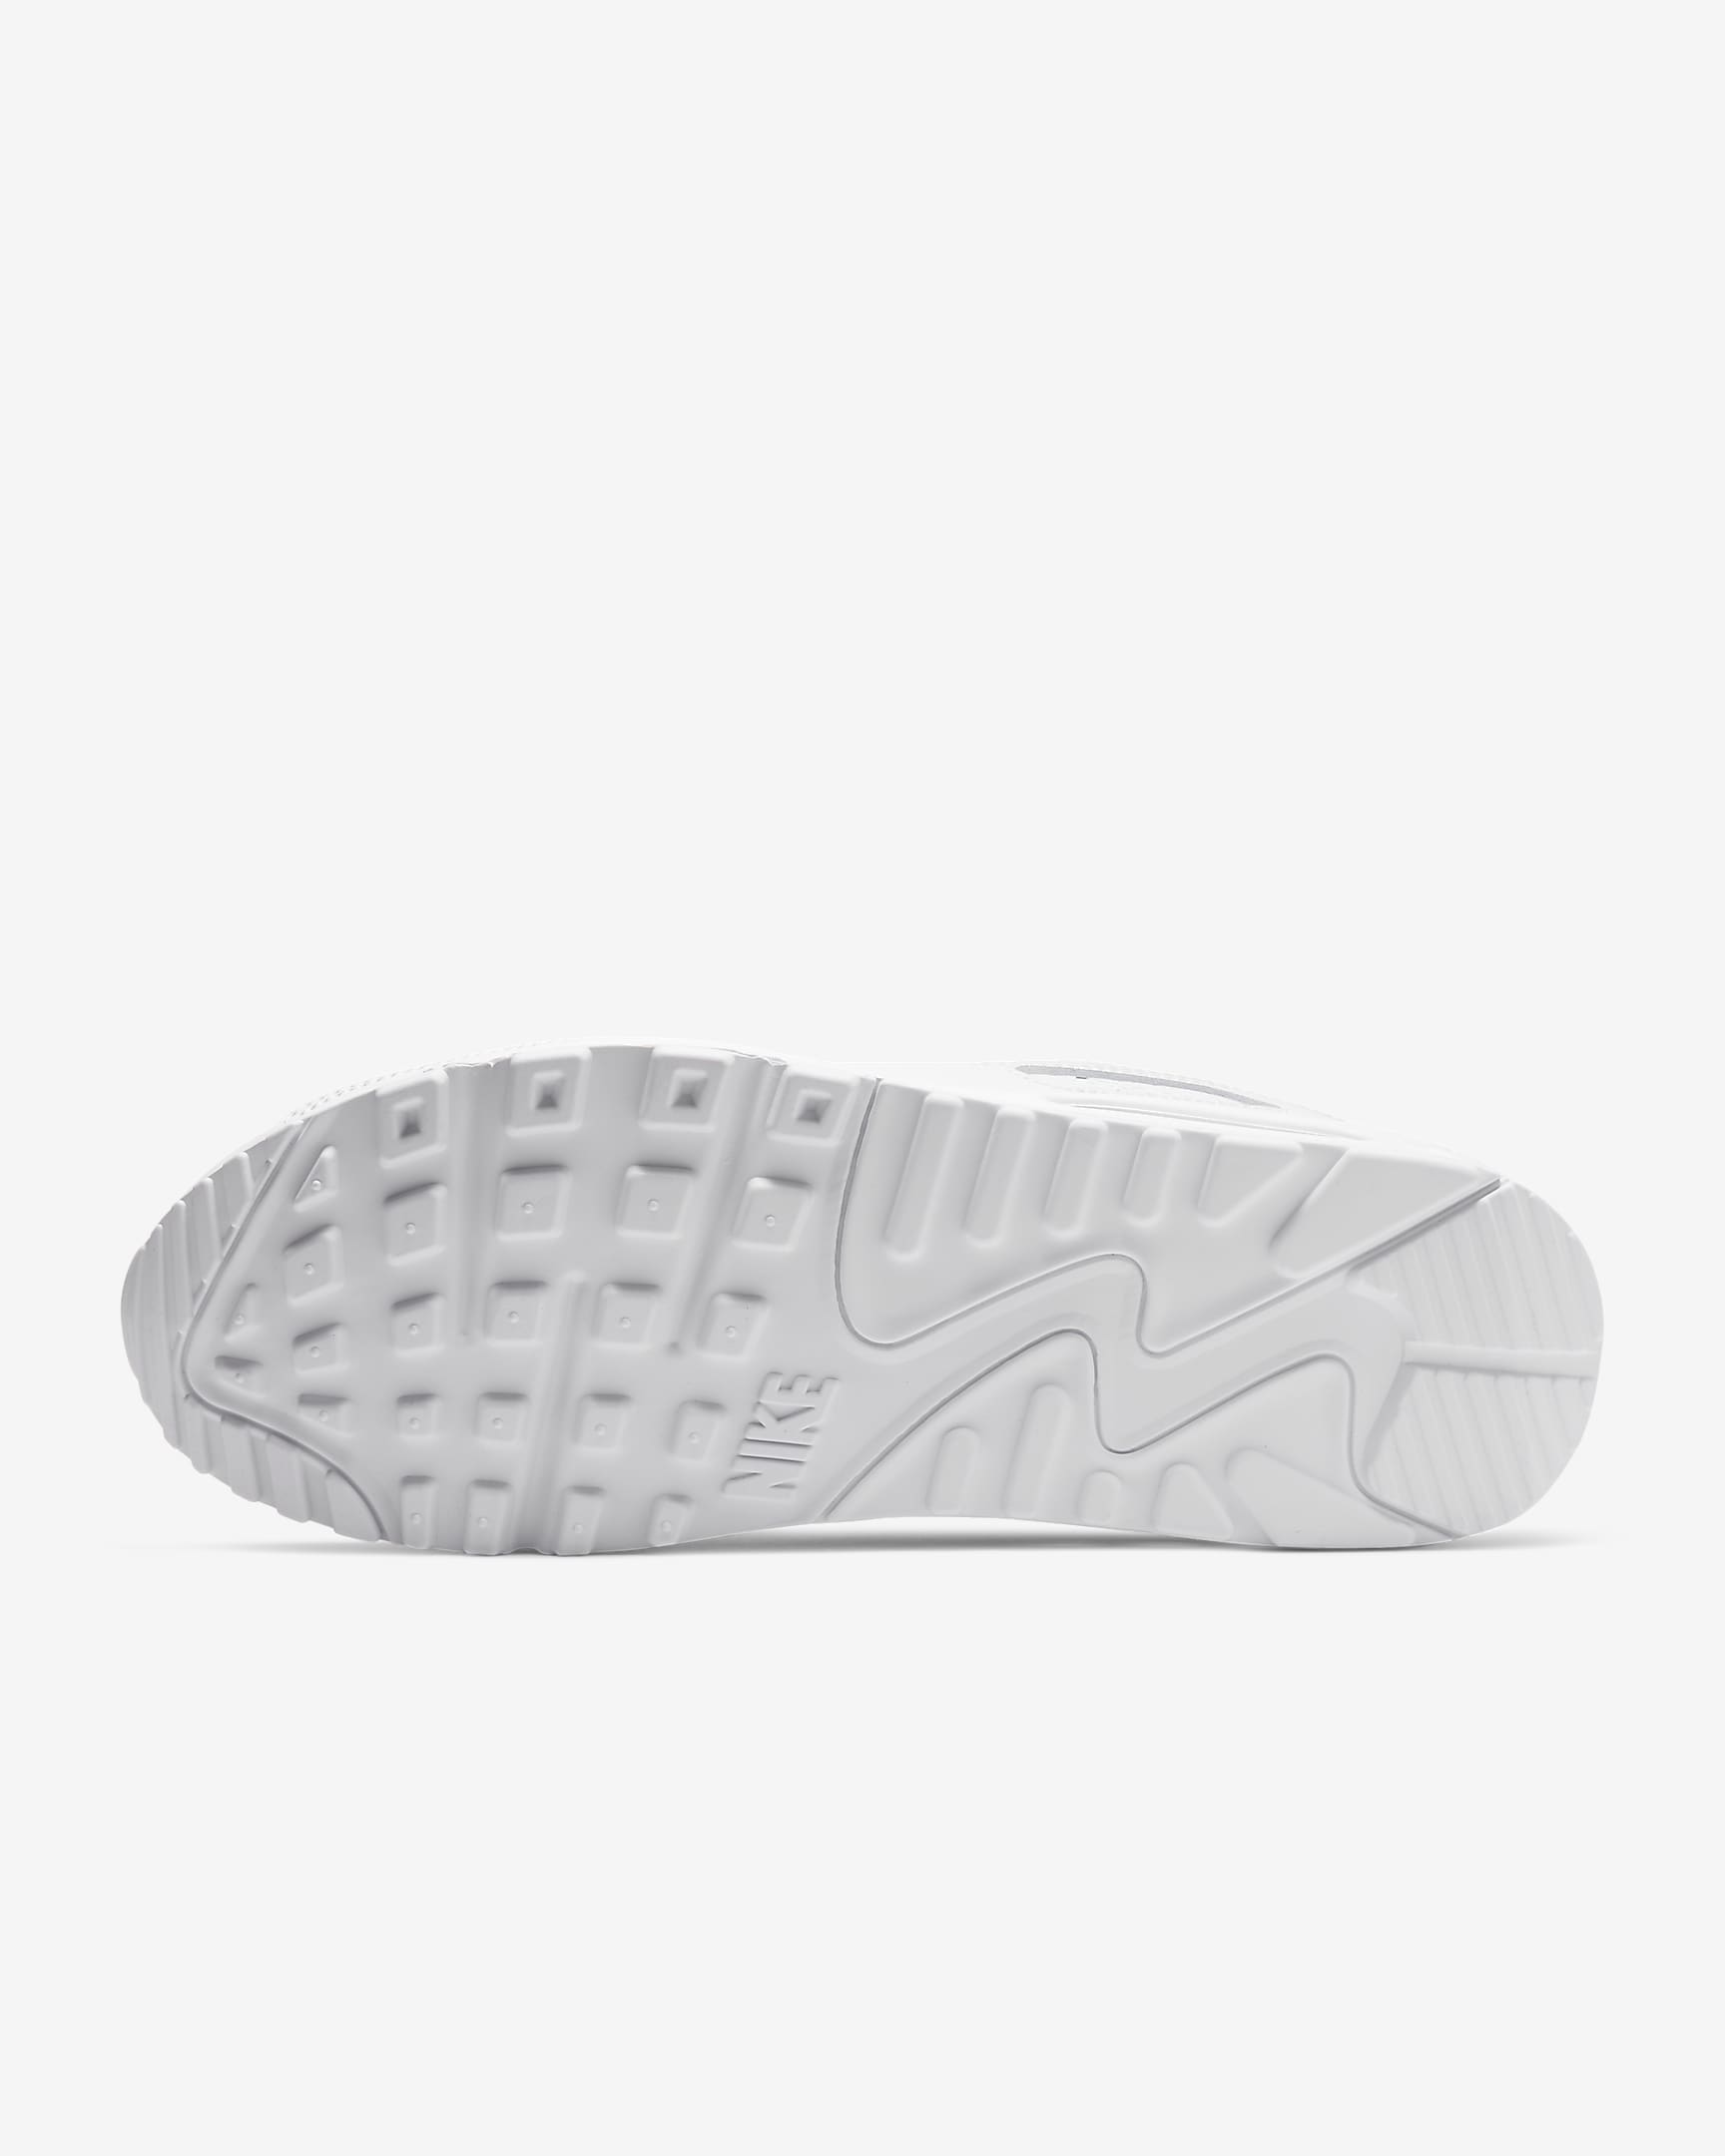 Nike Air Max 90 Men's Shoes - White/White/Wolf Grey/White